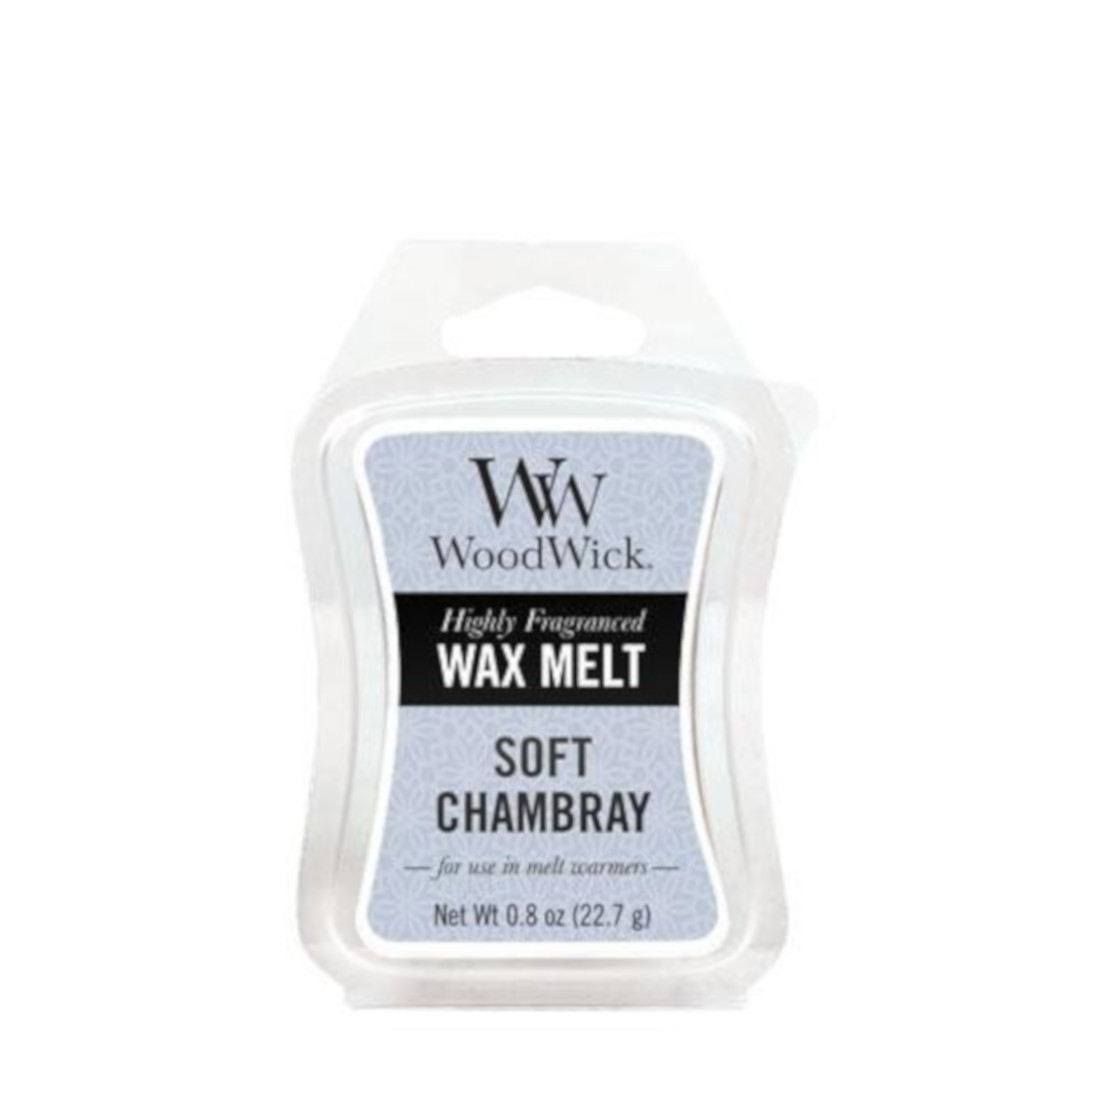 Woodwick Soft Chambray Wax Melt